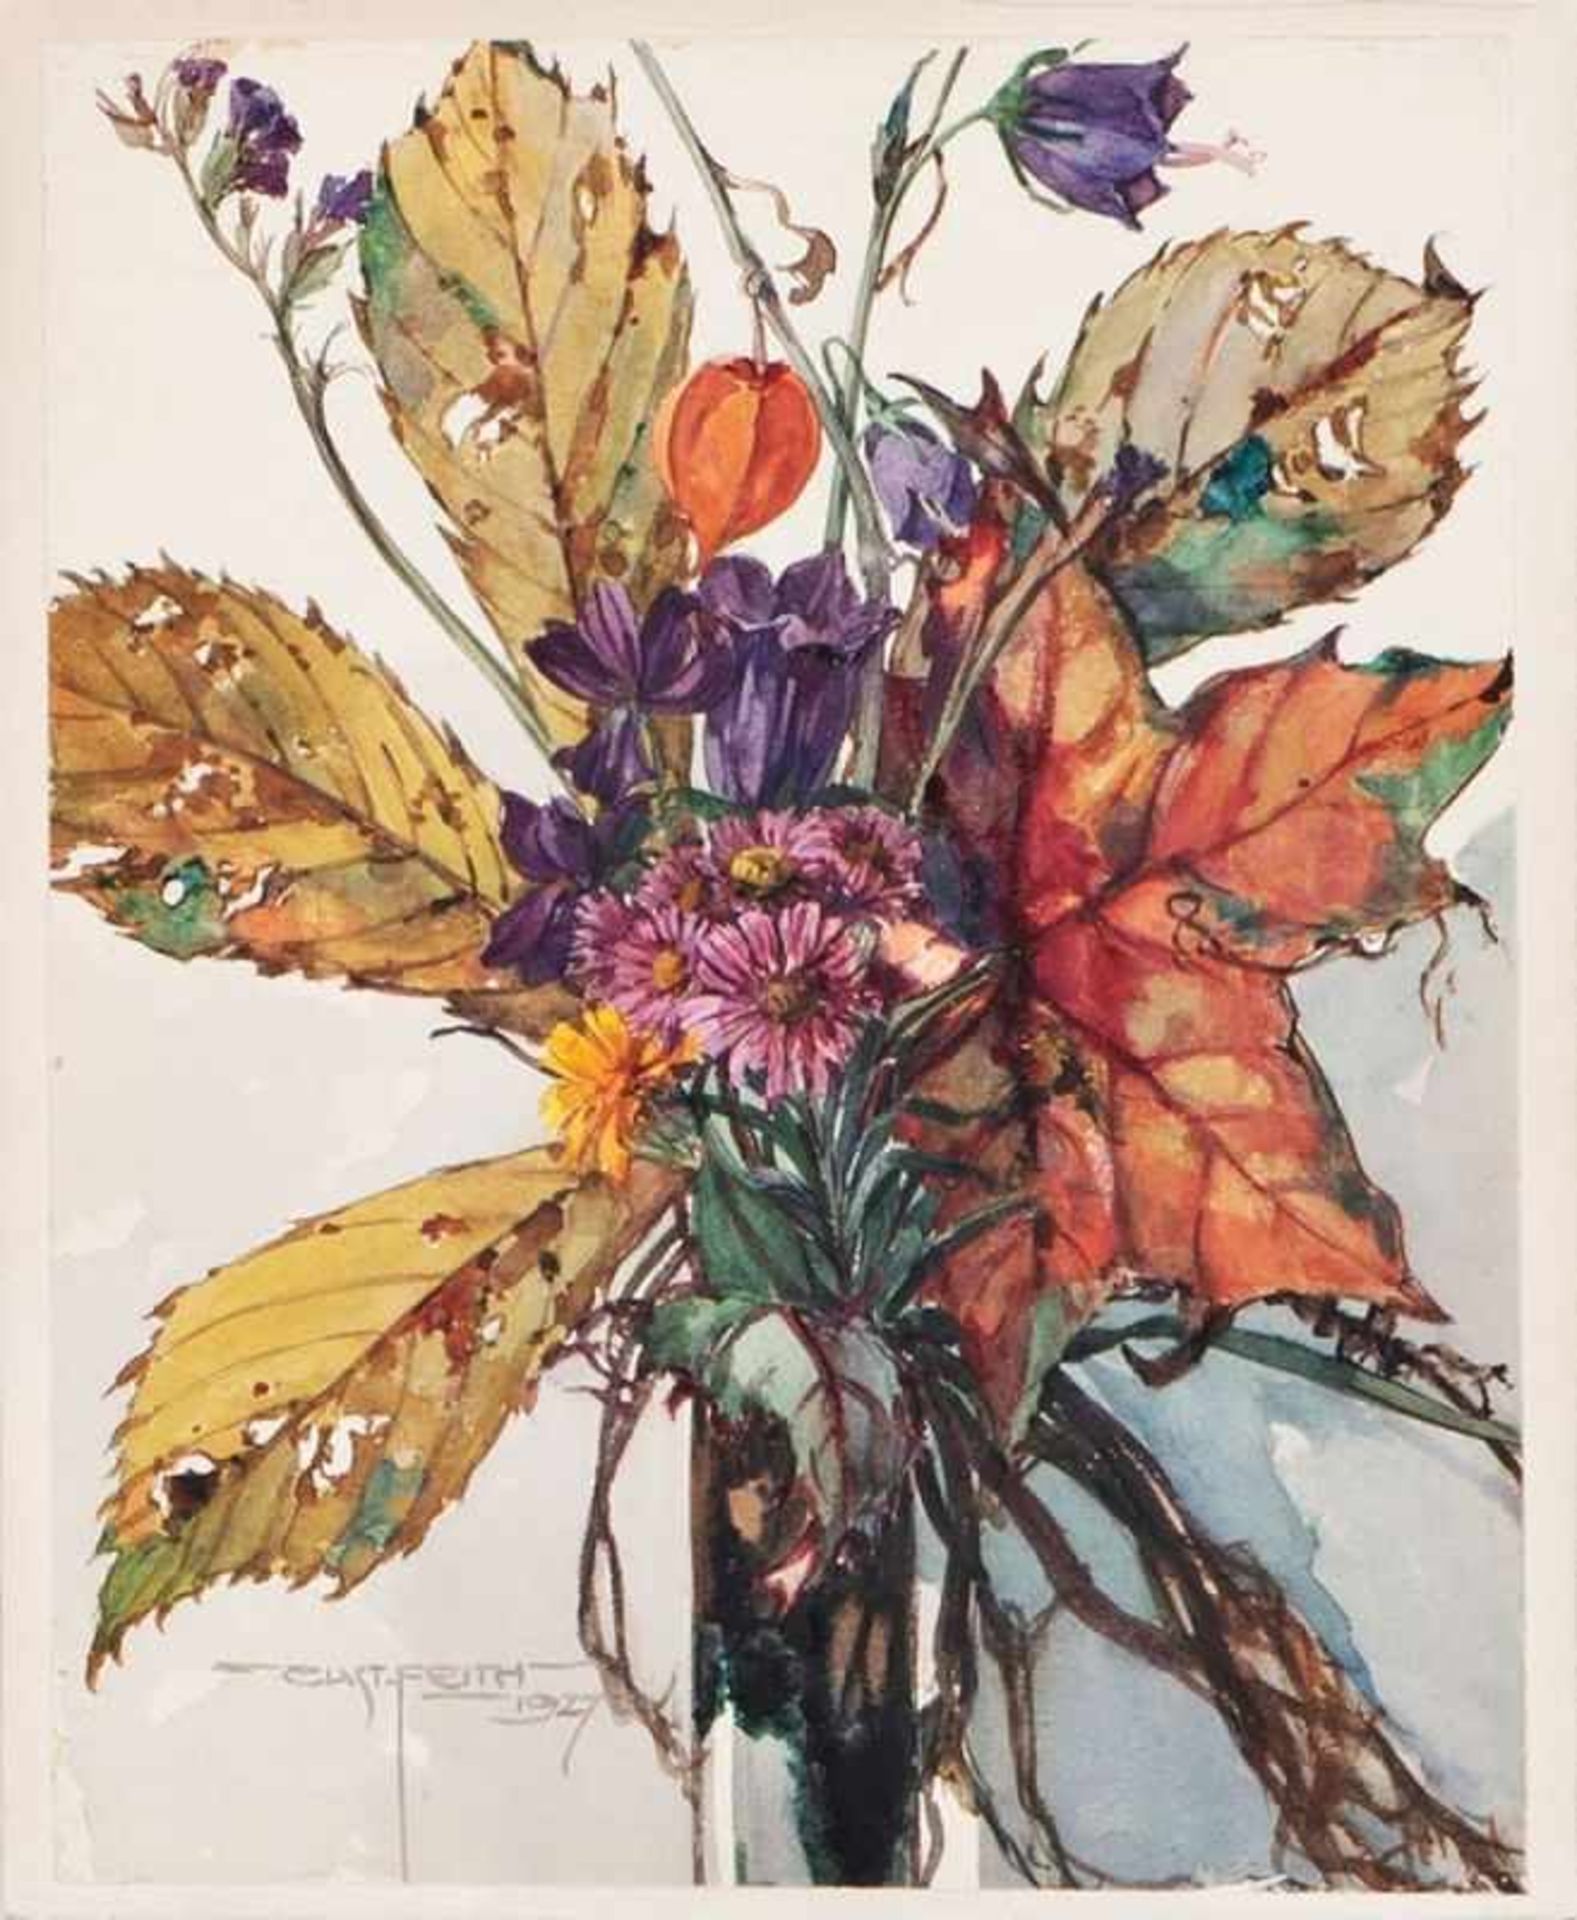 GUSTAV FEITH(1875 WIEN - 1951 WIEN)BAUERNBLUMEN, 1927Aquarell auf Papier, 24 x 18 cm,kaschiert auf